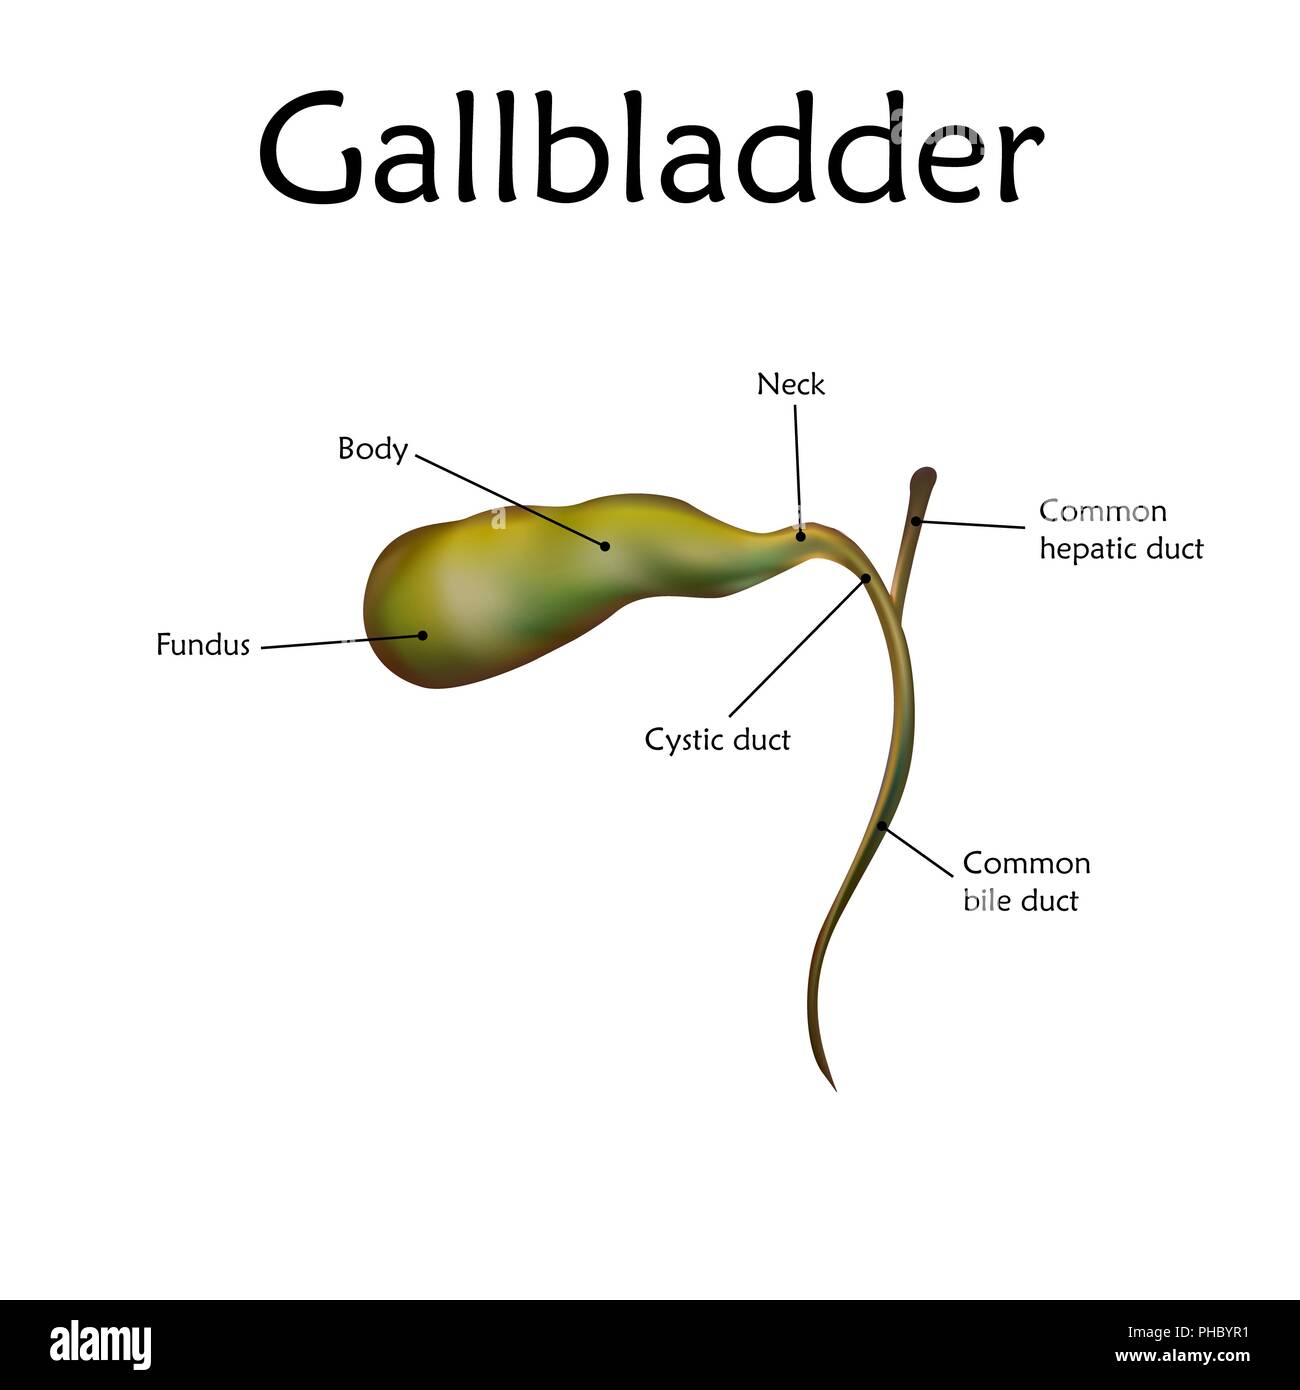 Gallbladder Labeled